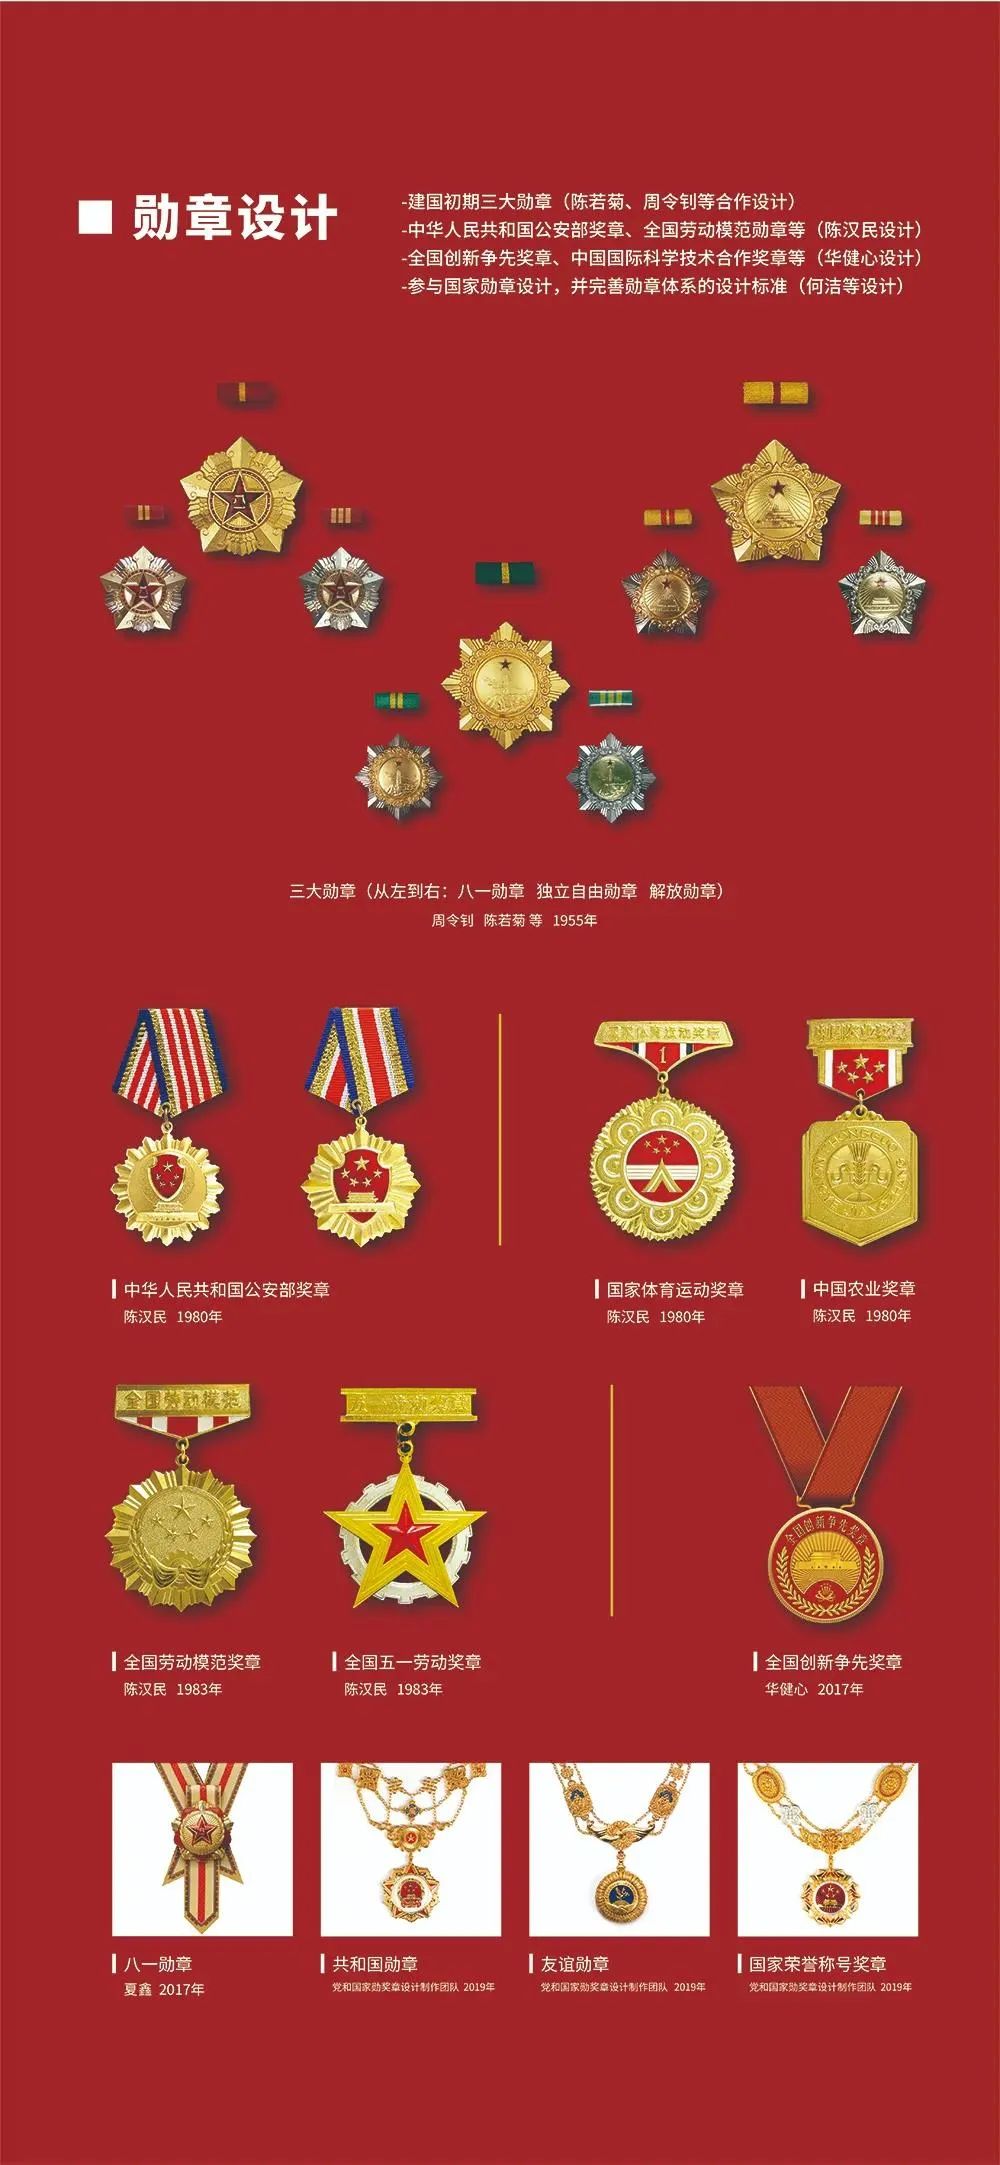 共和国勋章画法图片